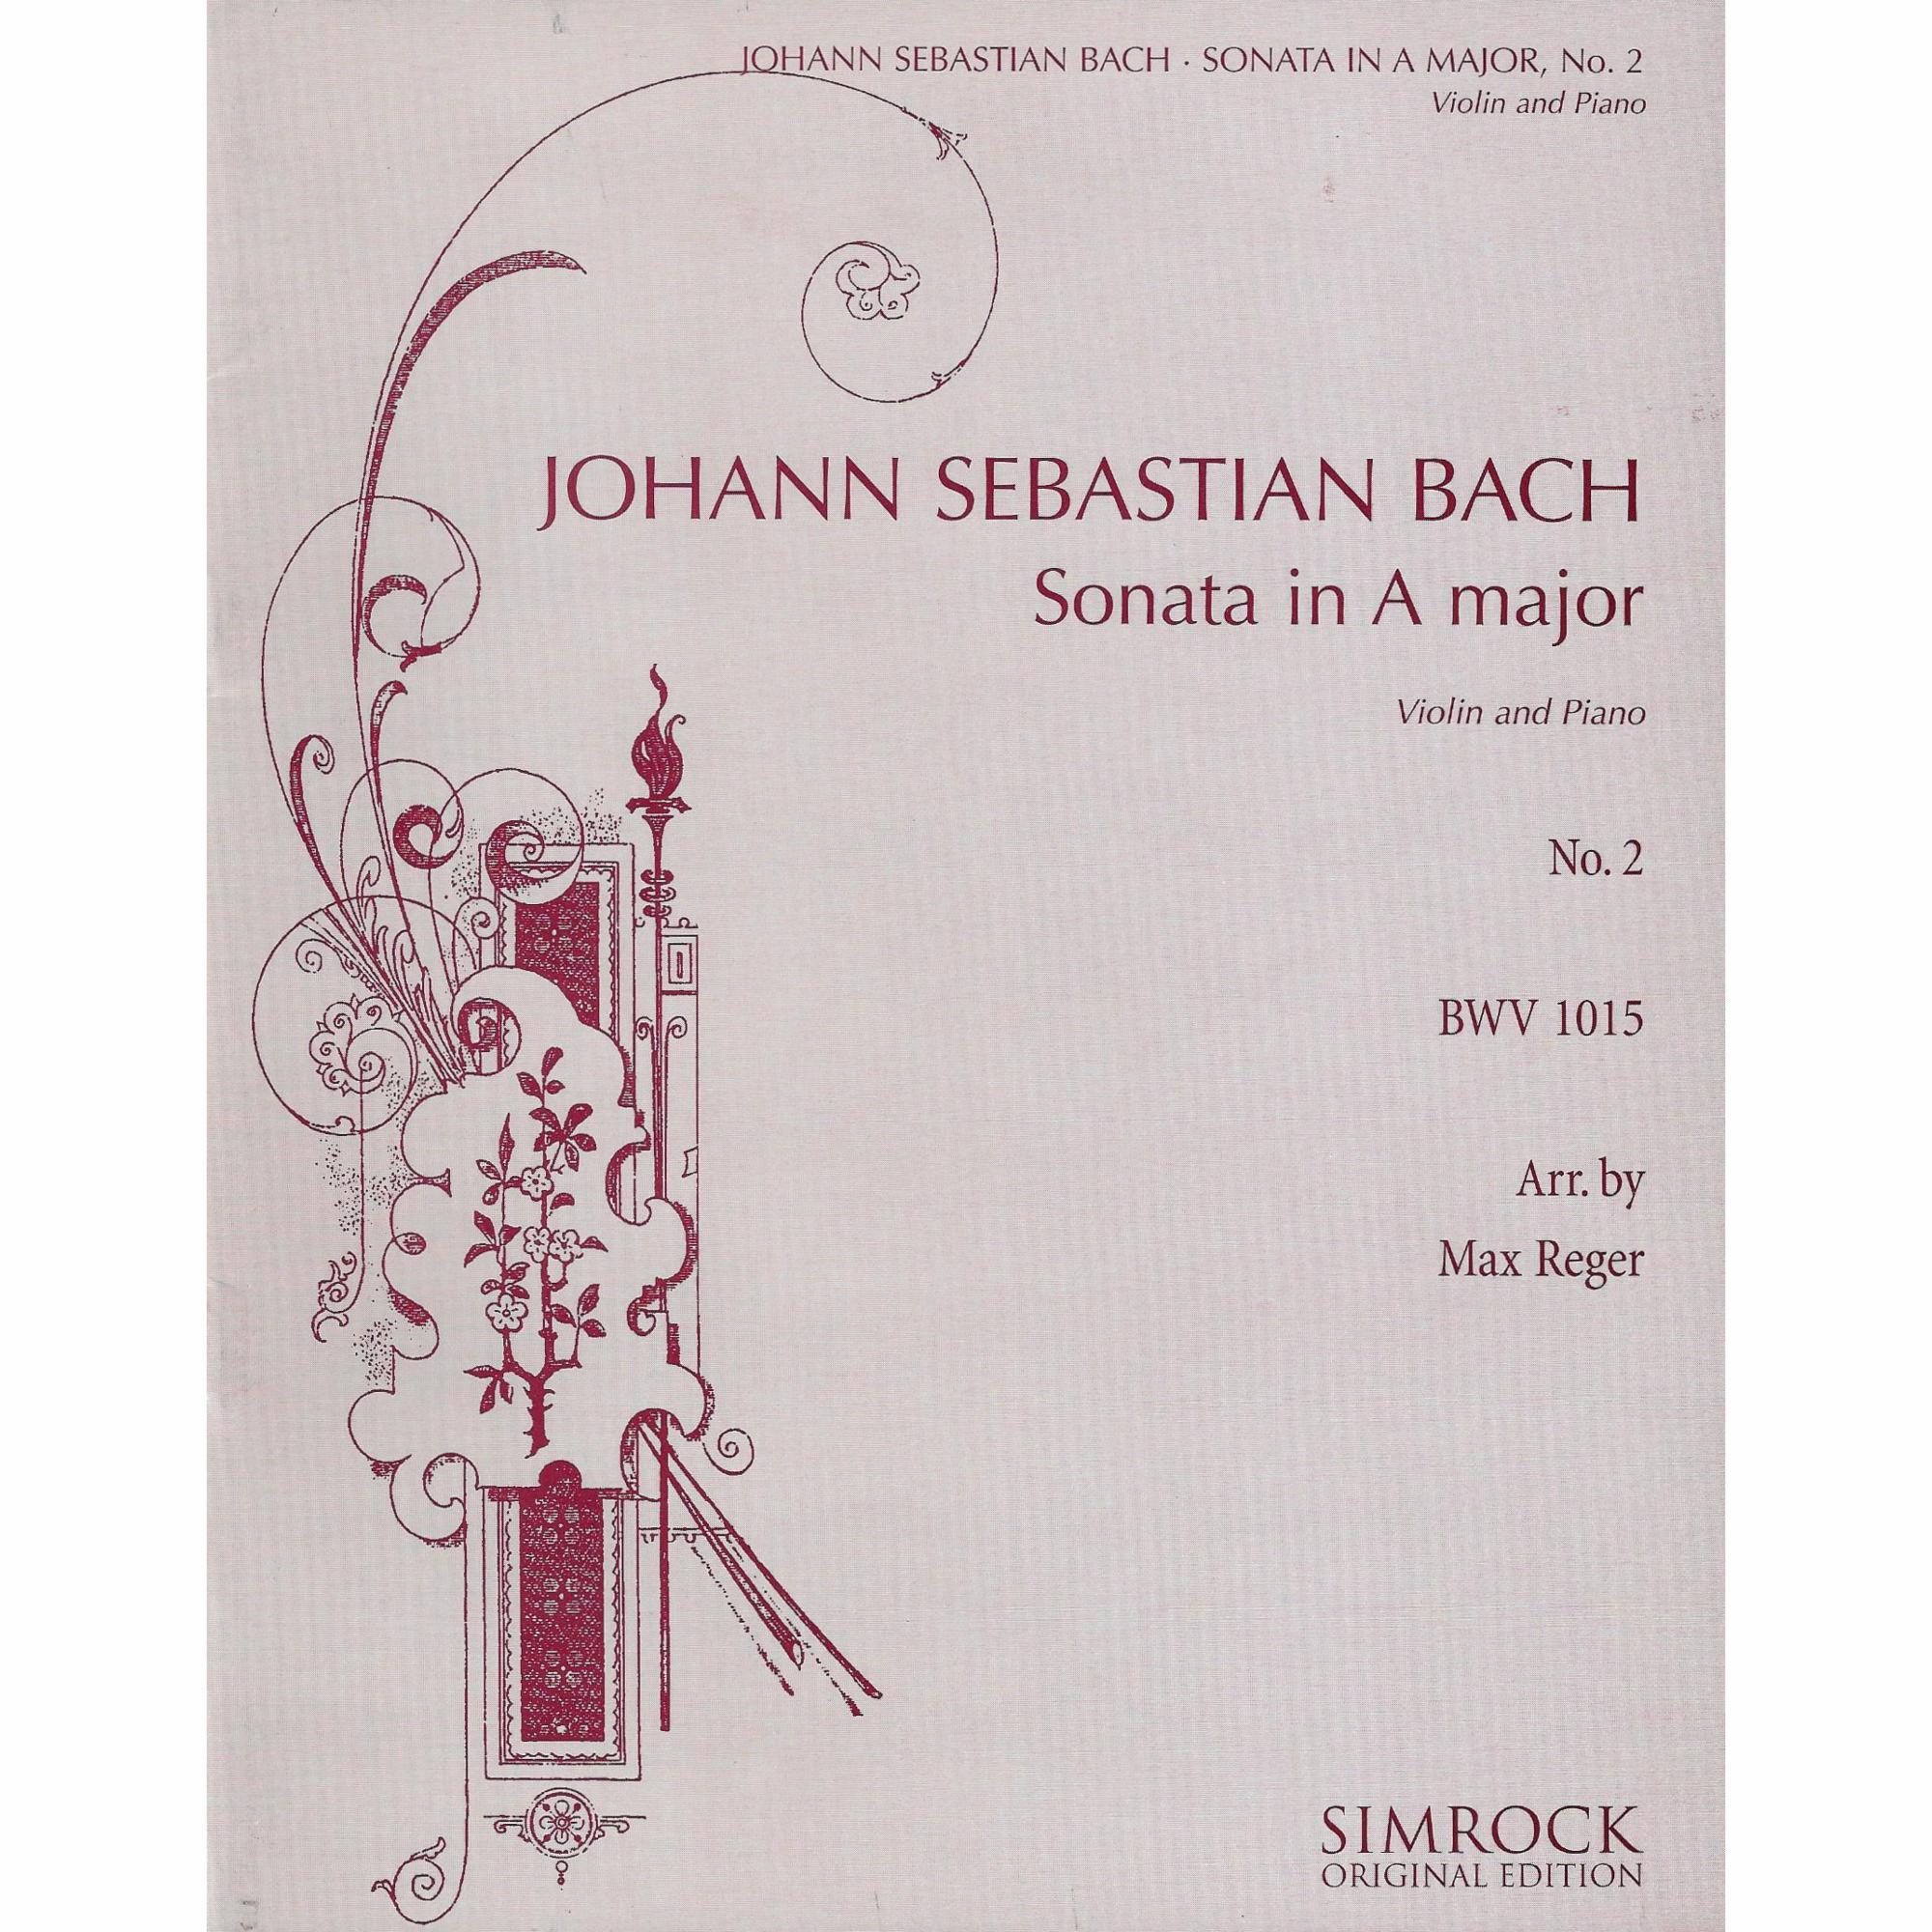 Violin Sonata No. 2 in A Major, BWV 1015